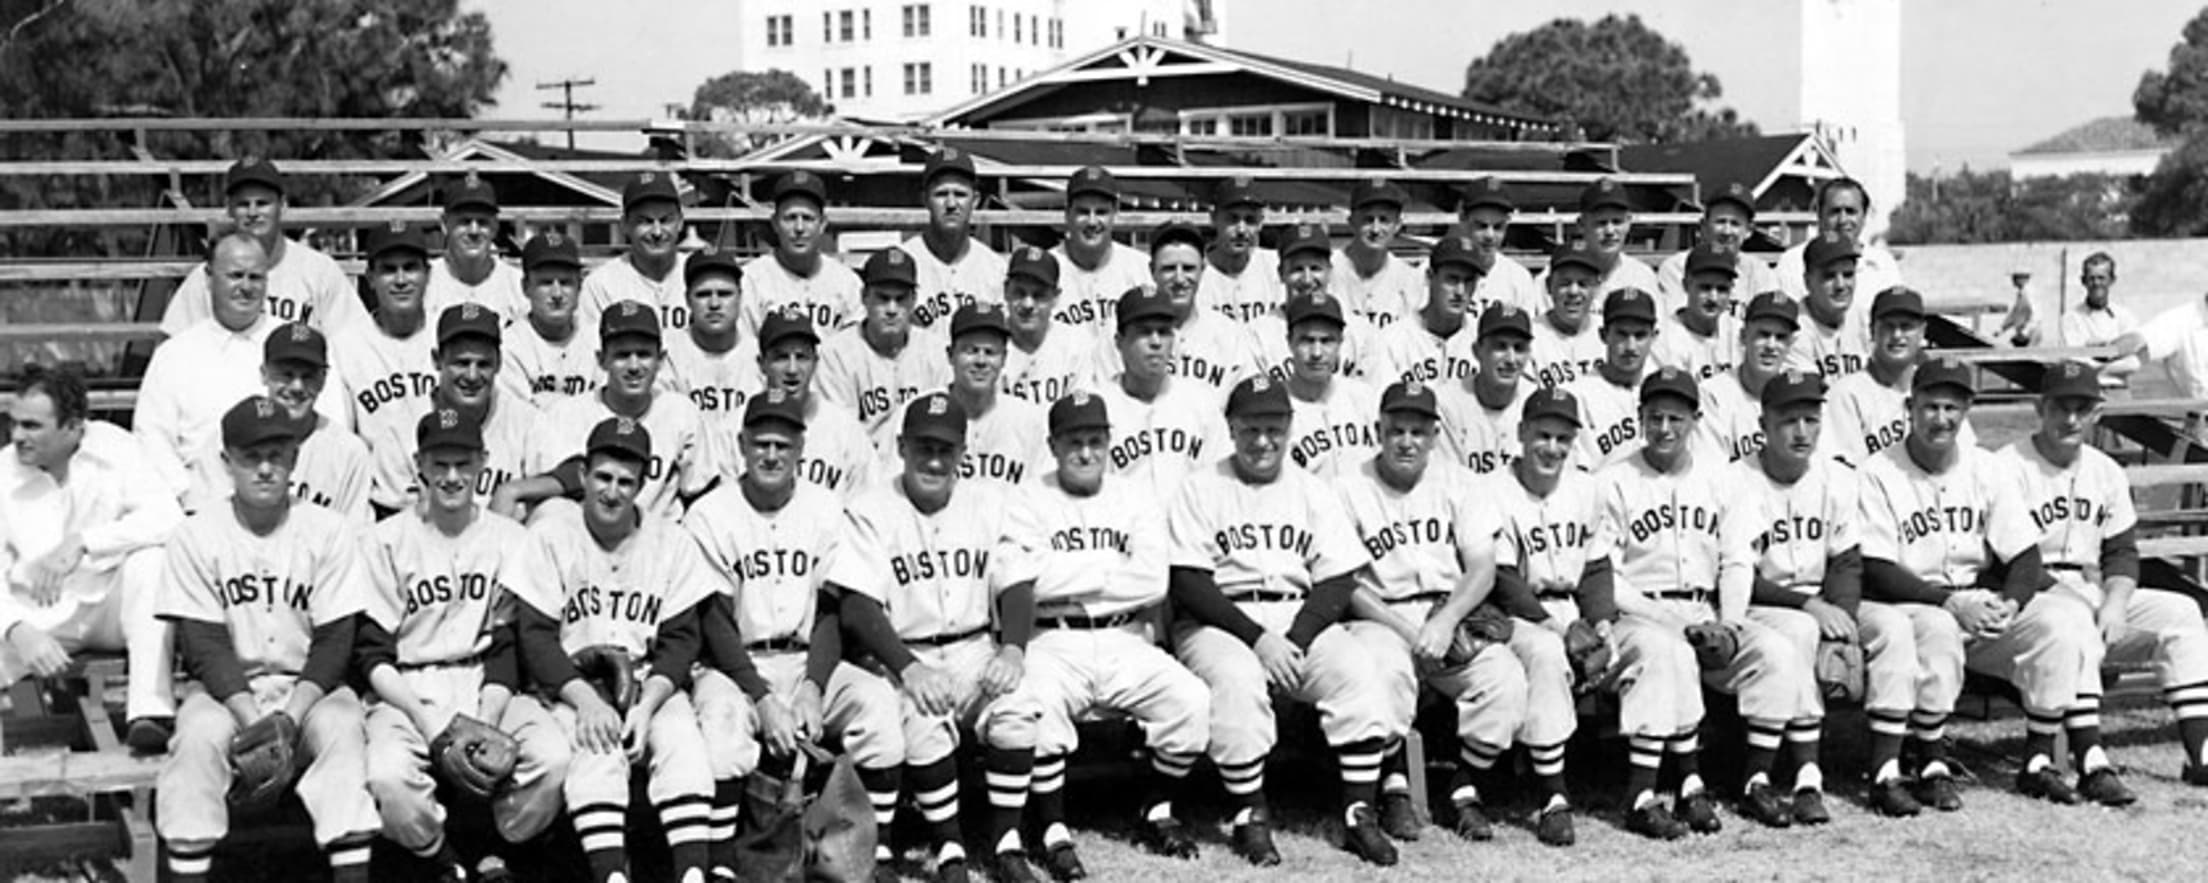 wall display 1948 baseball Boston Red Sox vs St Louis Browns Program tin sign 